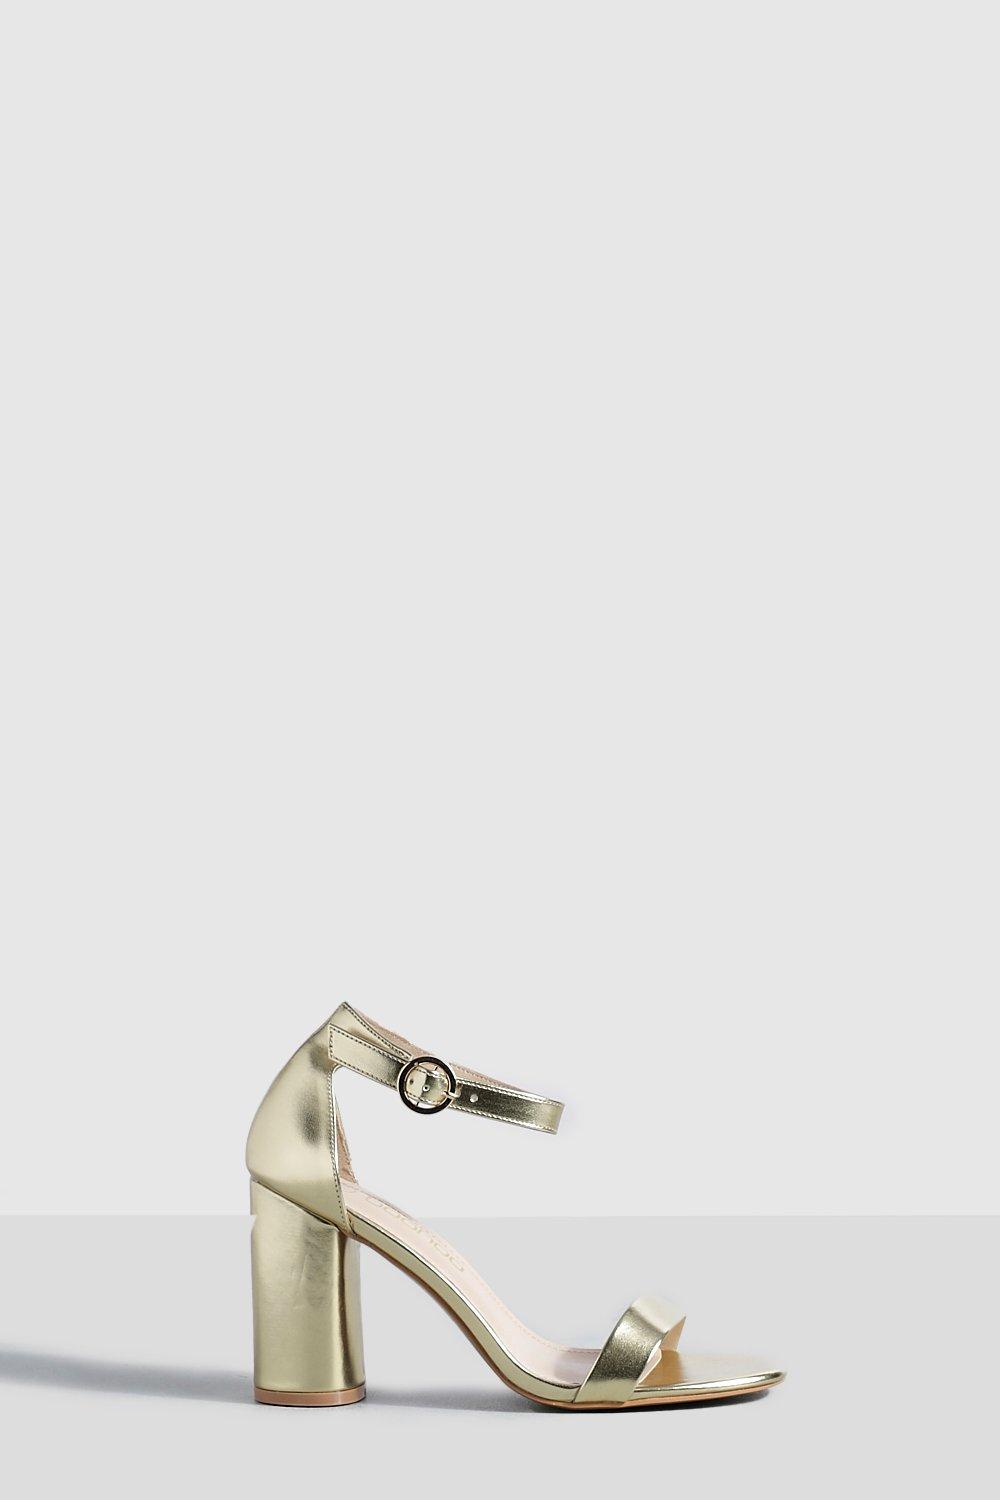 Image of Scarpe a calzata ampia in due parti effetto nudo con tacco arrotondato, Metallics